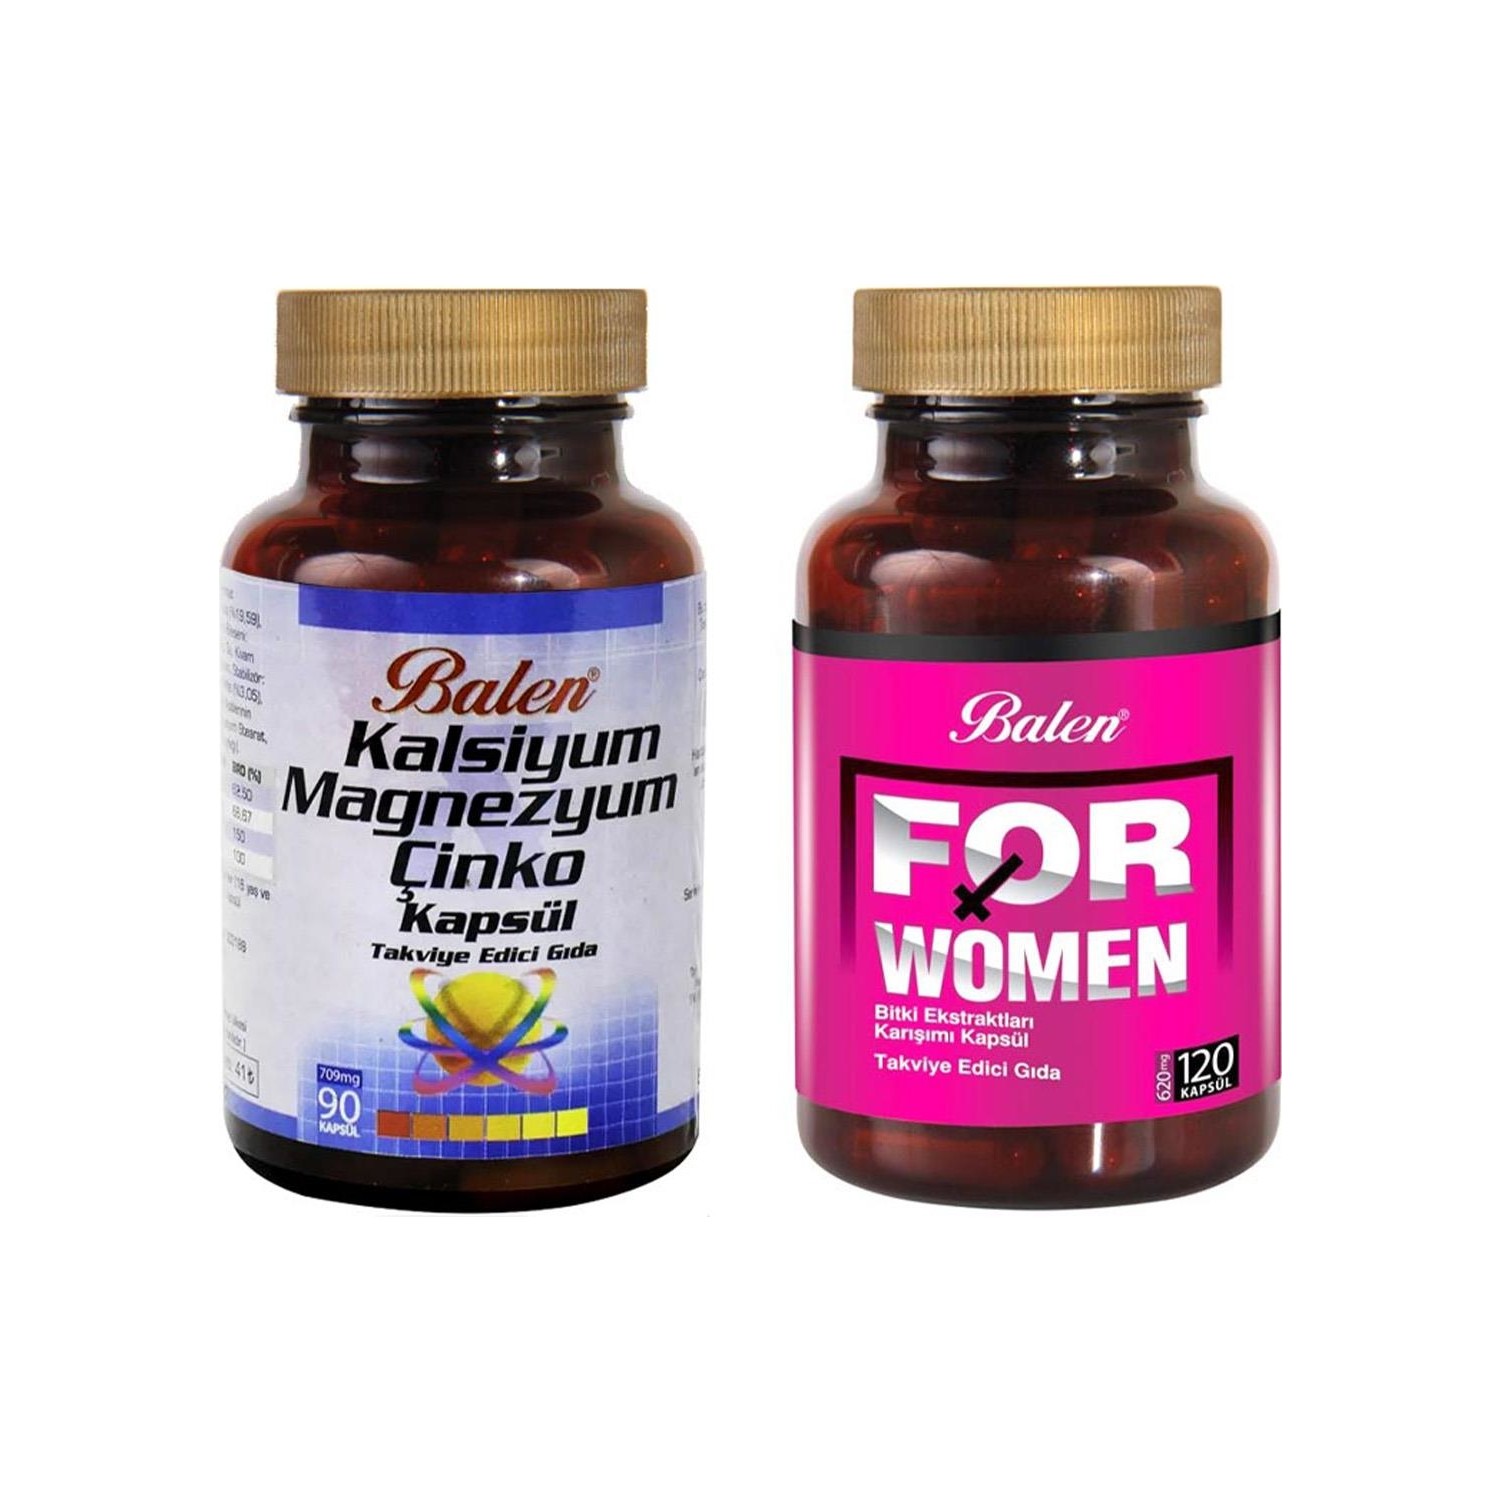 Активная добавка Balen For Woman, 120 капсул, 500 мг + Витаминный комплекс Balen Calcium Magnesium Zinc, 90 капсул, 709 мг natrol кора йохимбе 500 мг 90 капсул